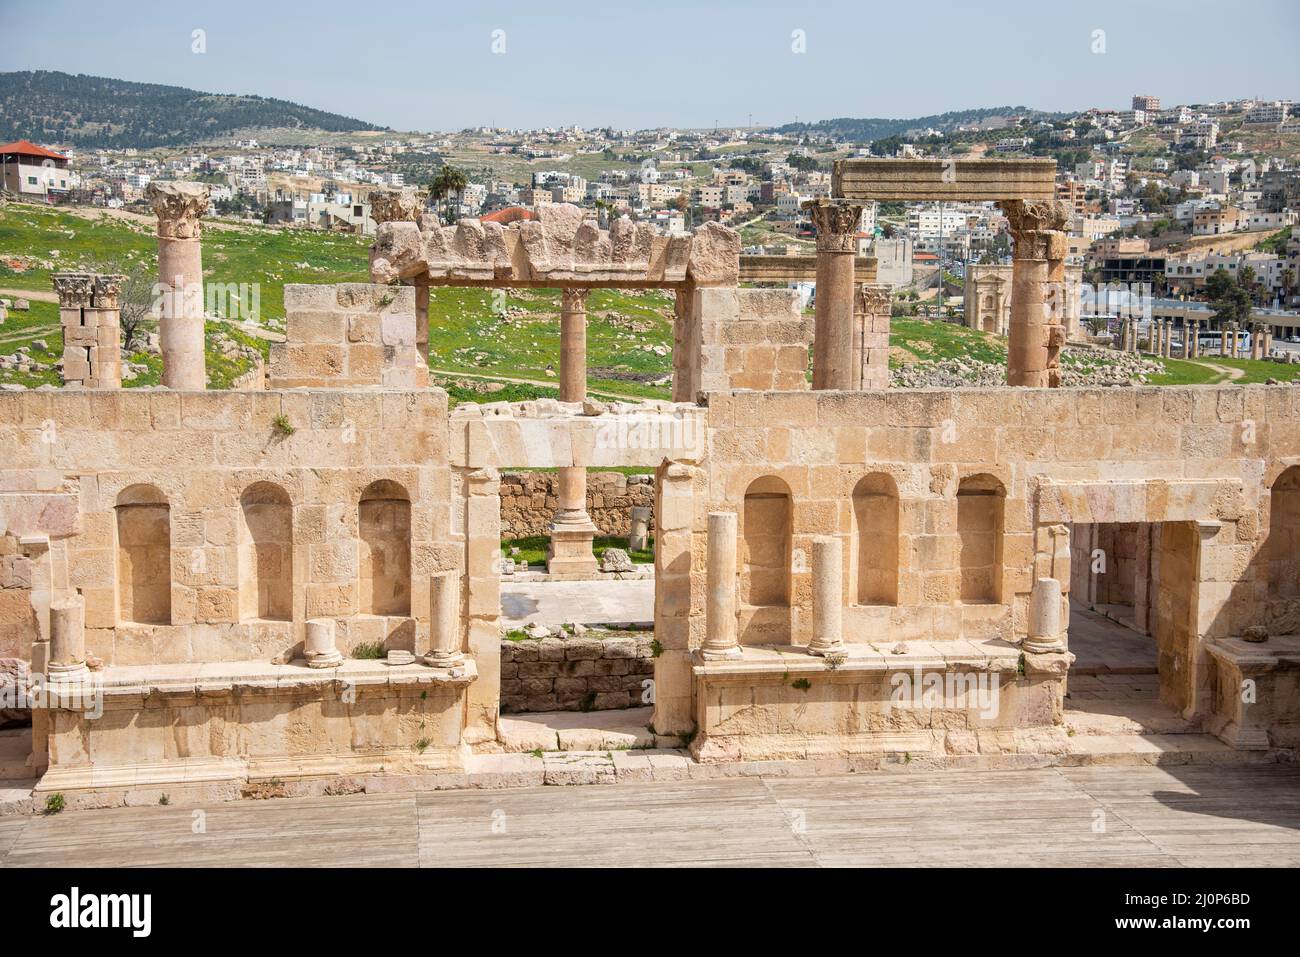 Una estancia de 48 kilómetros al norte de la capital Jordania, Amman se encuentra Jerash. Una ciudad conocida por la ciudad grecorromana de Gerasa. Foto de stock